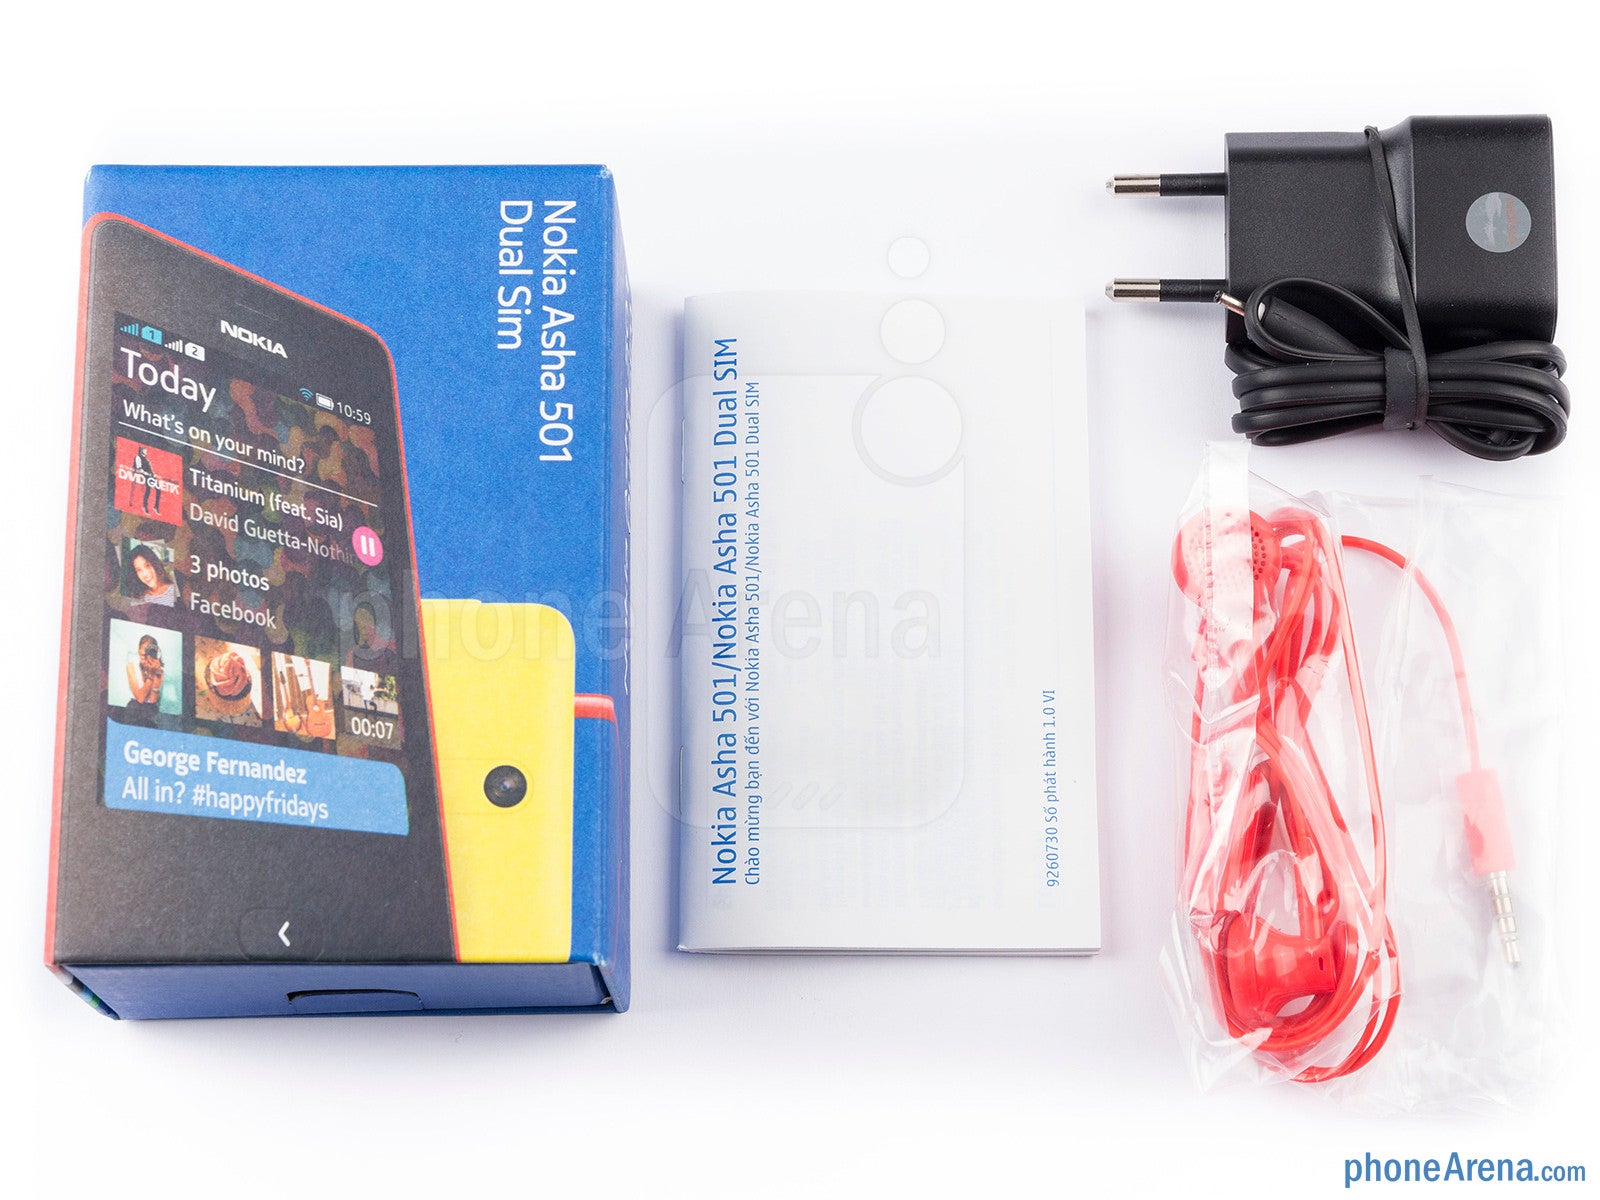 Box contents - Nokia Asha 501 Review